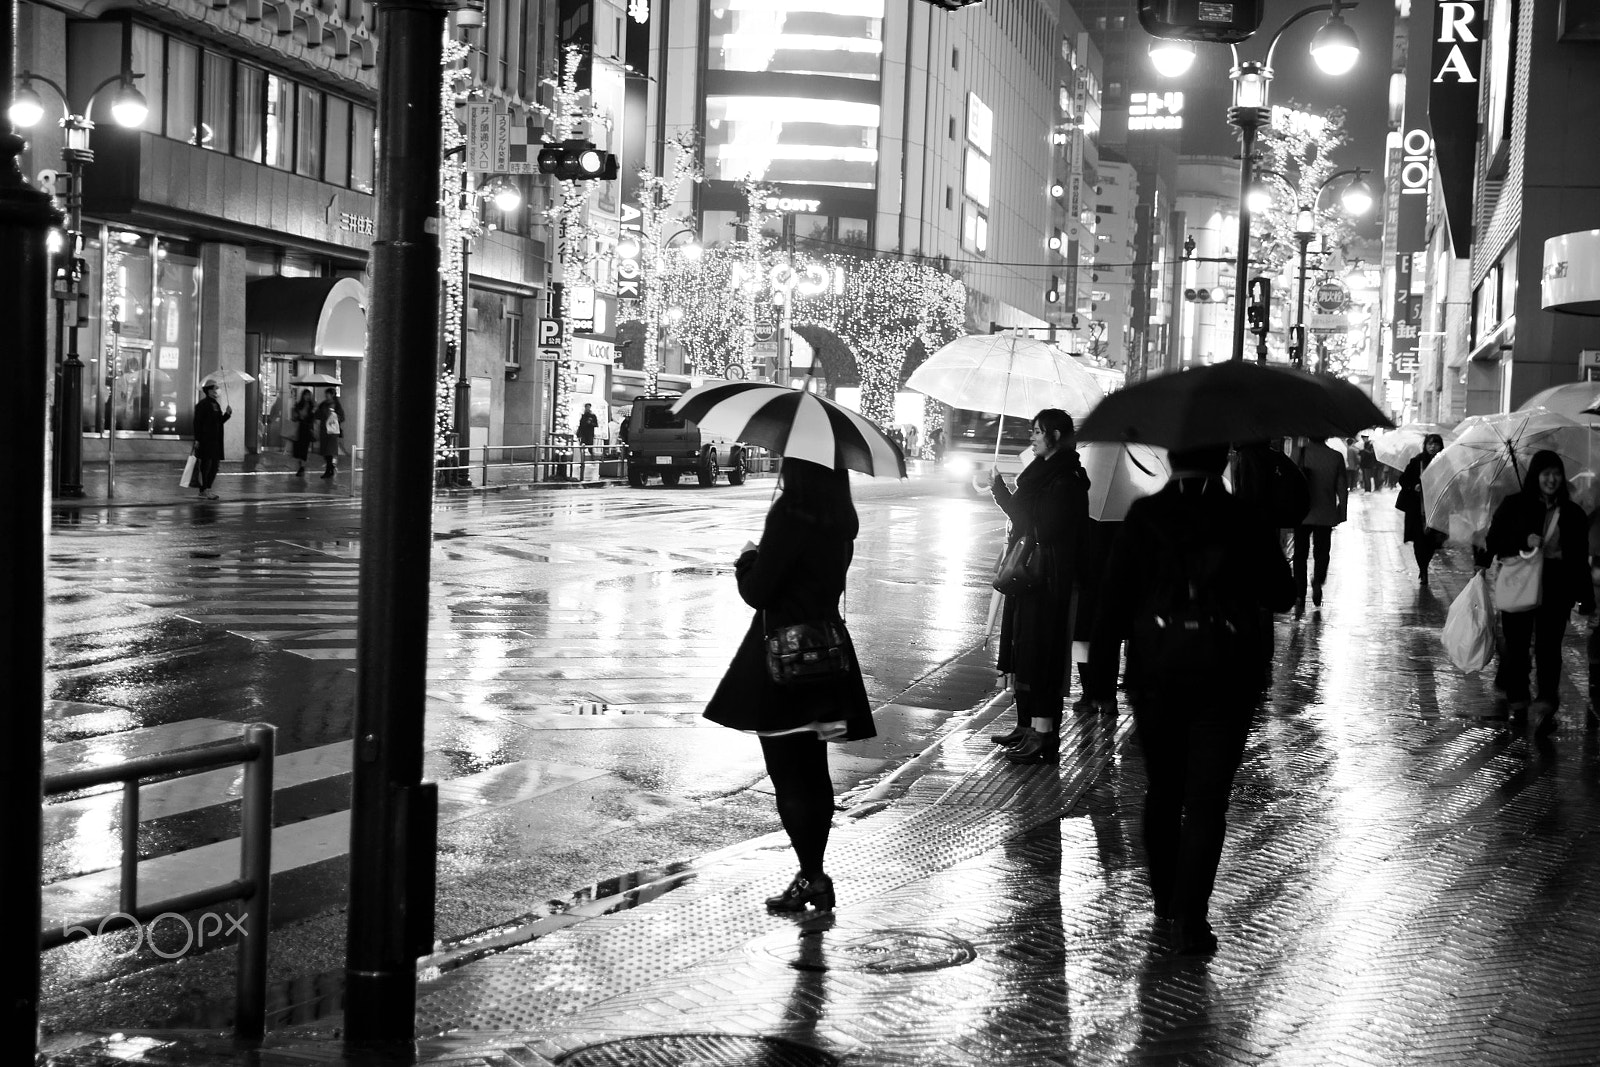 Canon EOS 650D (EOS Rebel T4i / EOS Kiss X6i) sample photo. Shibuya rainy night photography